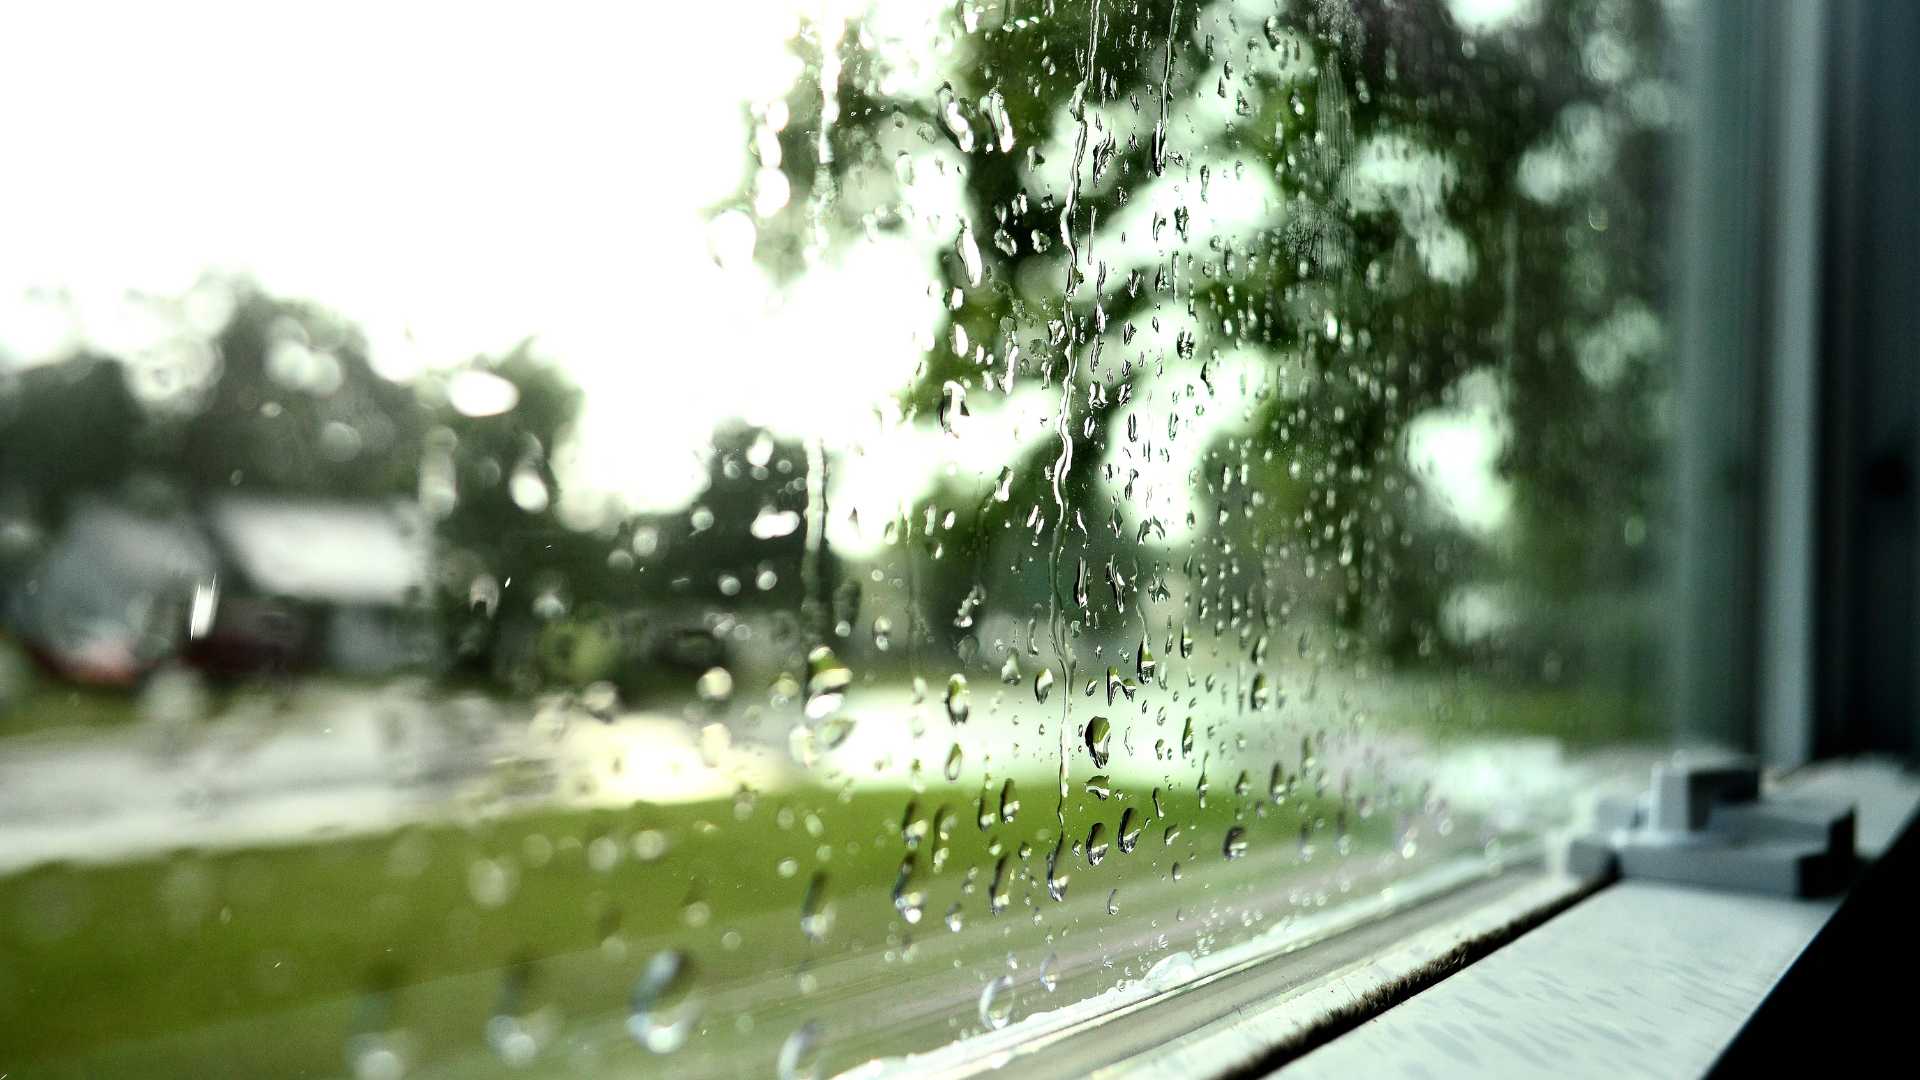 ablak eso Sokan azt tartják, hogy mindennek megvan a maga ideje és helye. Így van ez az időjárással és a májusi esővel is, ami jelentős hatással bír mindennapjainkra.